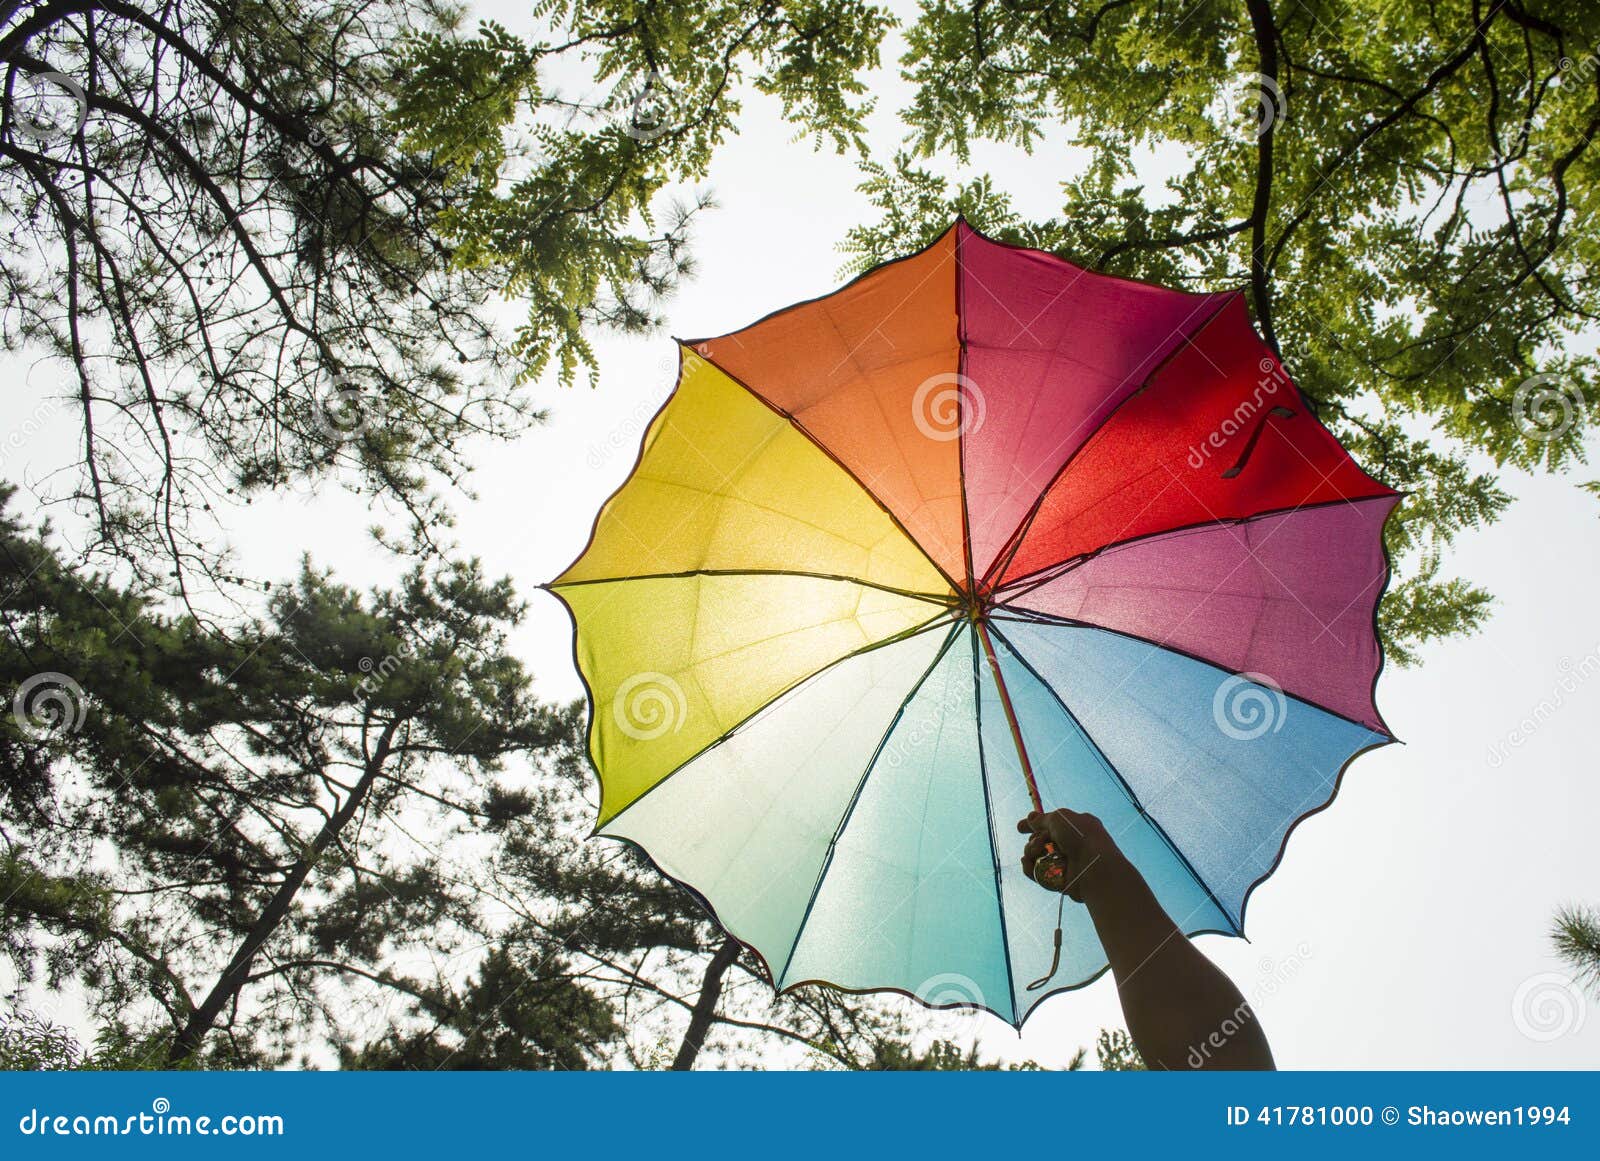 厂家现货批发供应彩虹伞 雨伞 碰击布广告伞保险礼品自动直杆伞-阿里巴巴